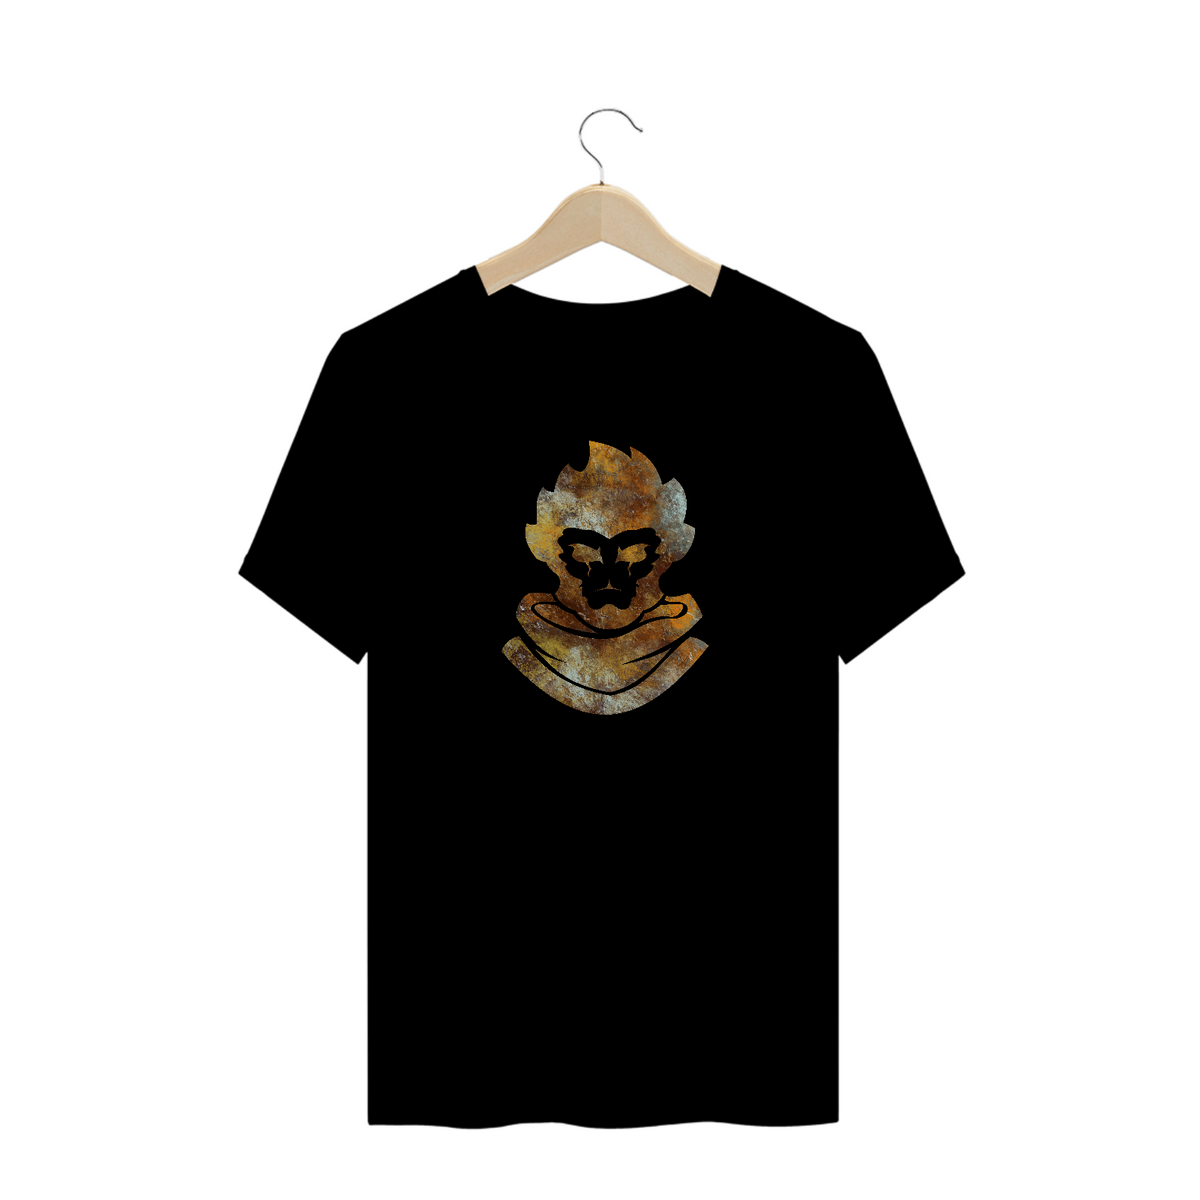 Nome do produto: T-Shirt Wukong (LEAGUE OF LEGENDS)